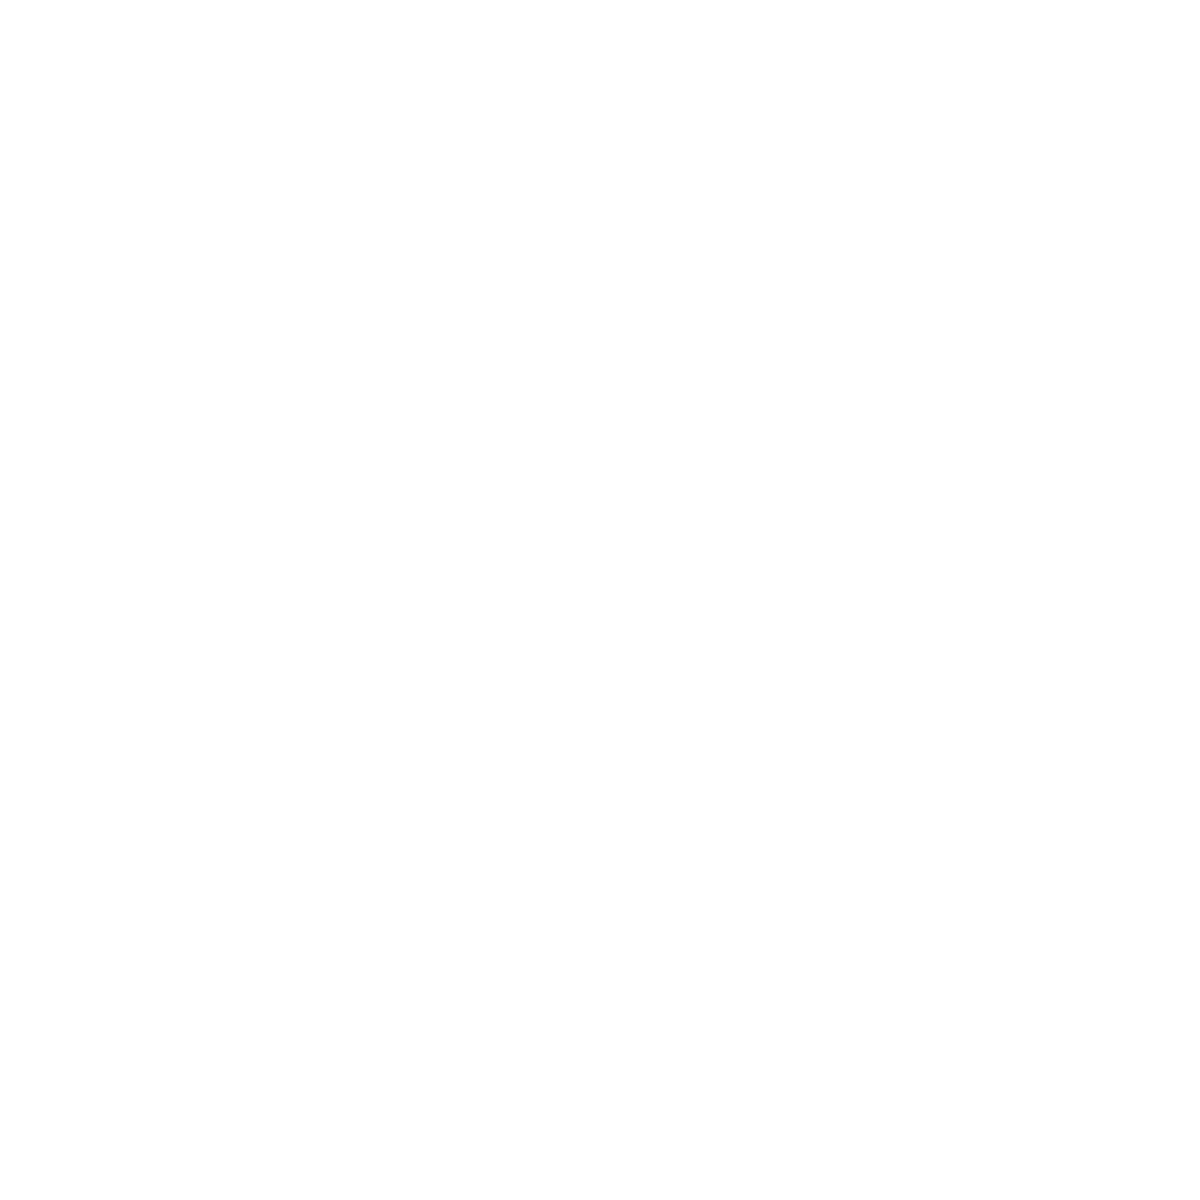 Agencia para el Desarrollo de Industrias Creativas y Digitales de Jalisco